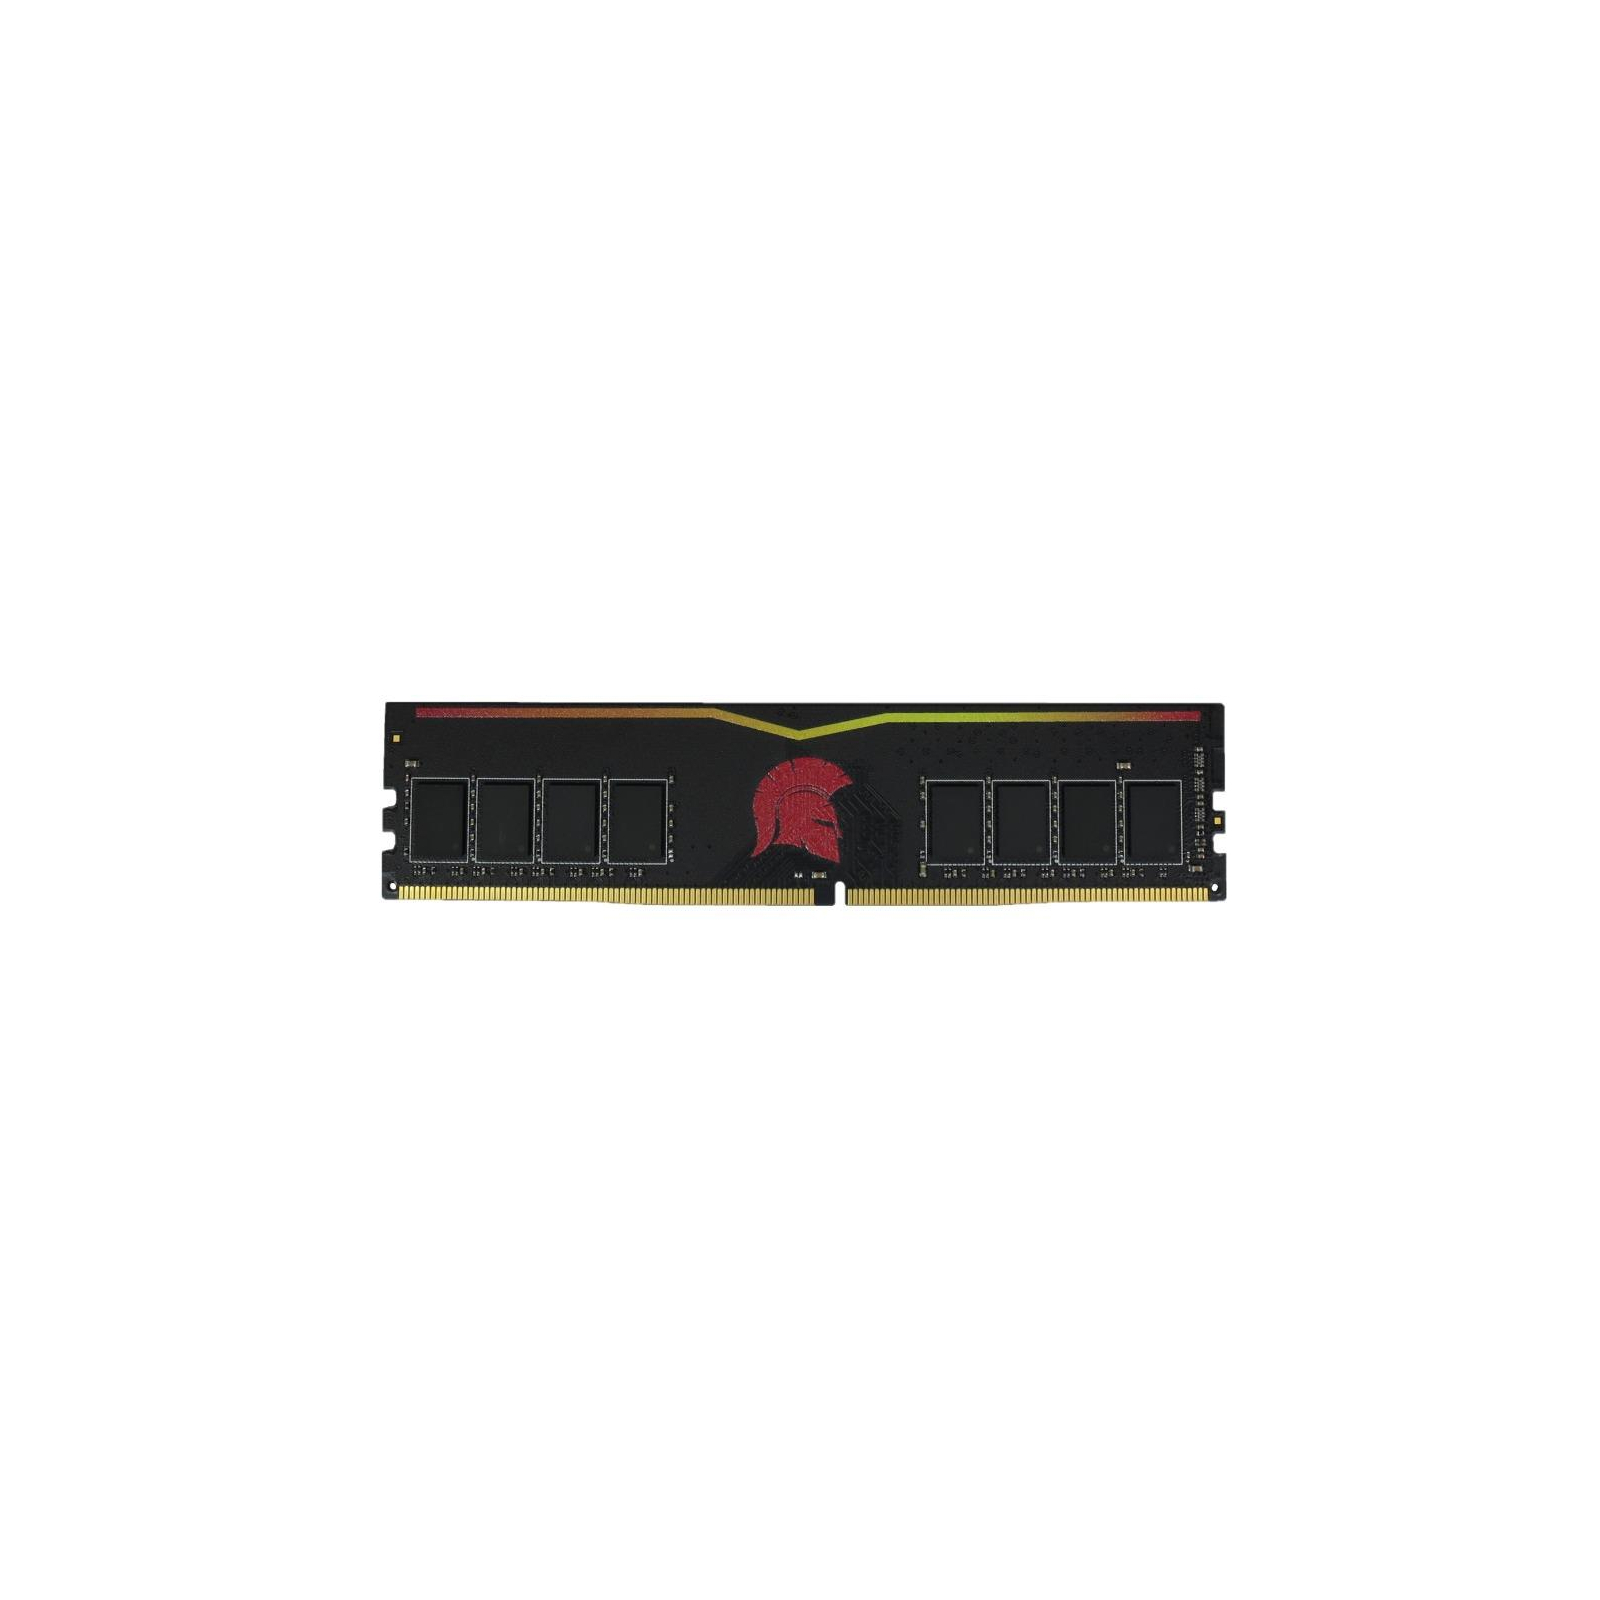 Модуль памяти для компьютера DDR4 8GB 2400 MHz Red eXceleram (E47051A)